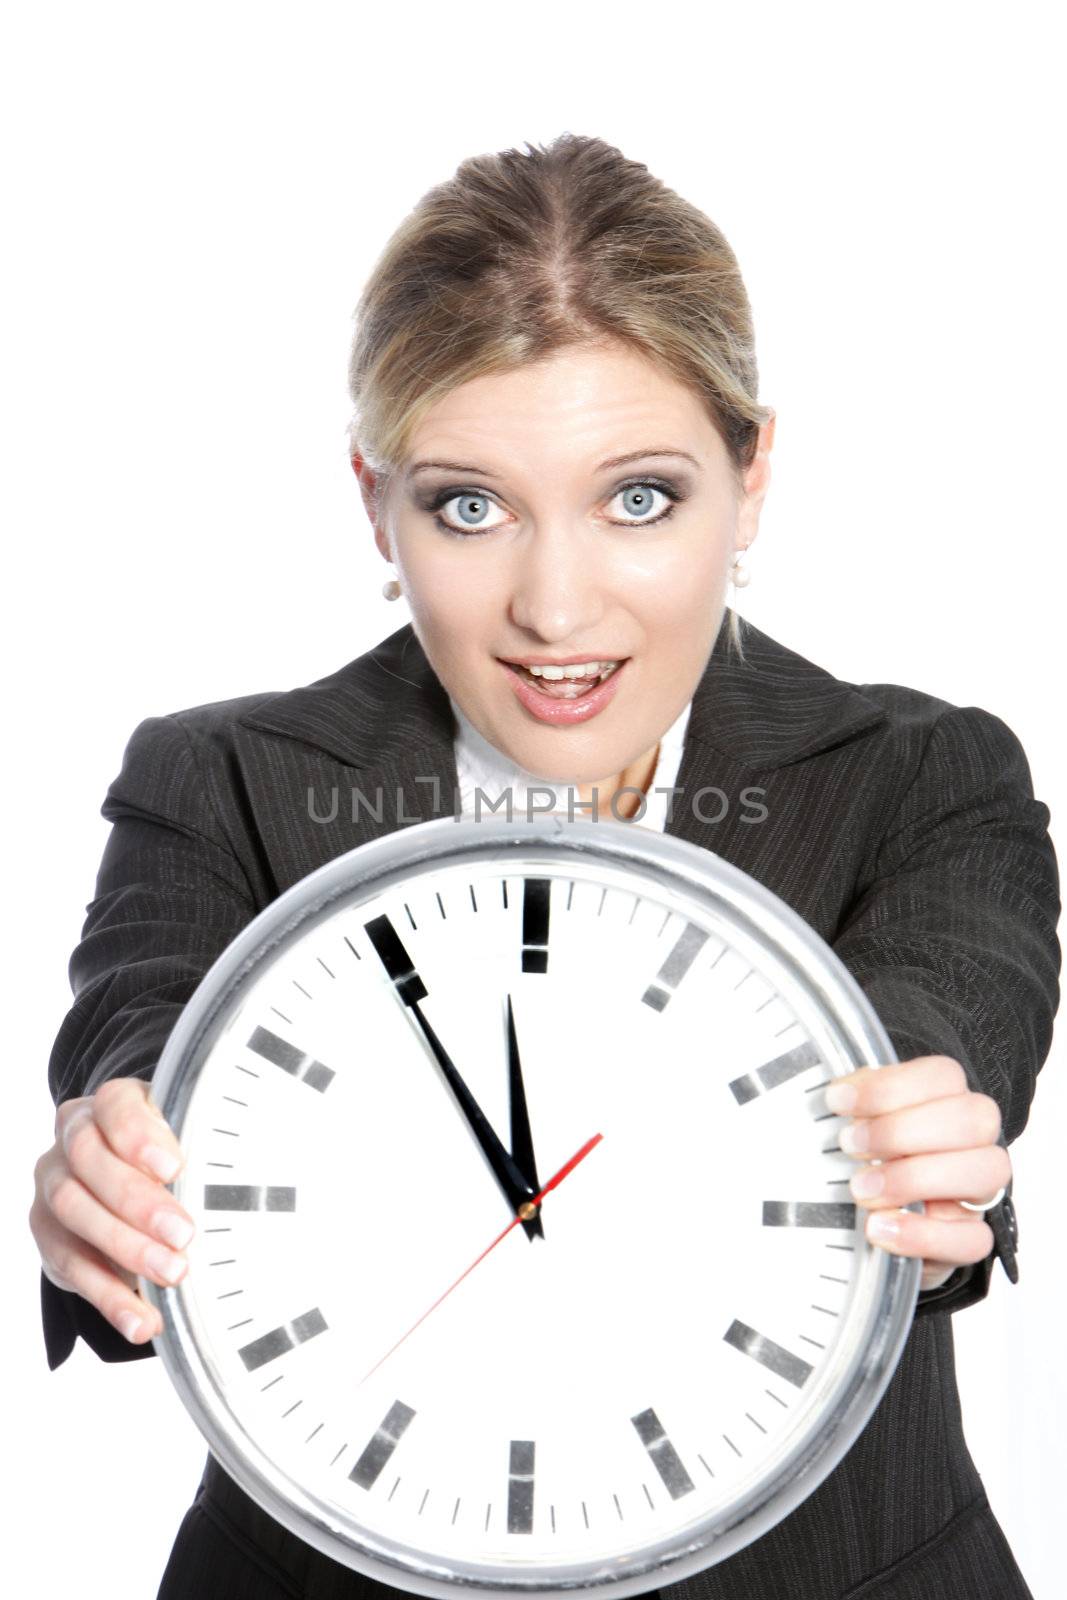 Conceptual portrait of businesswoman showing a clock